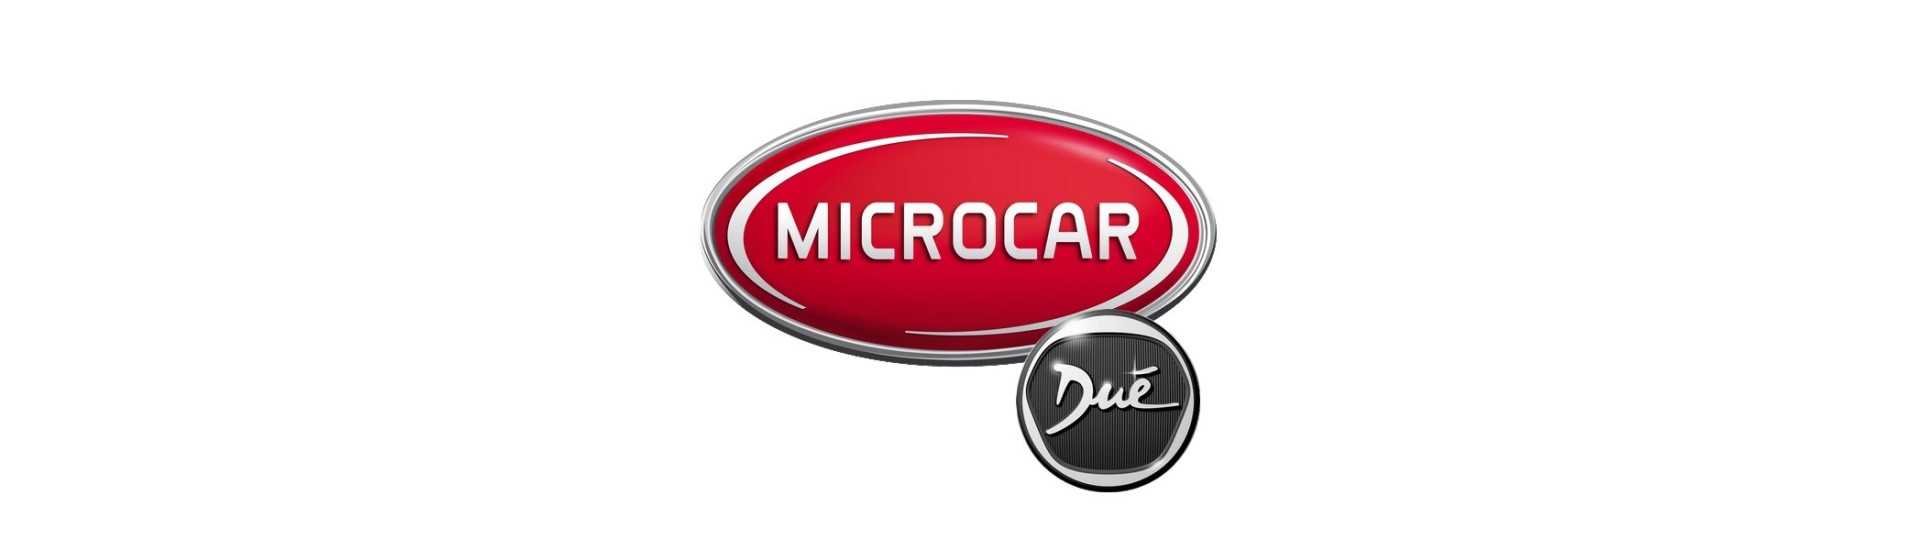 Rota cu cel mai bun preț pentru o mașină fără permis Microcar Dué